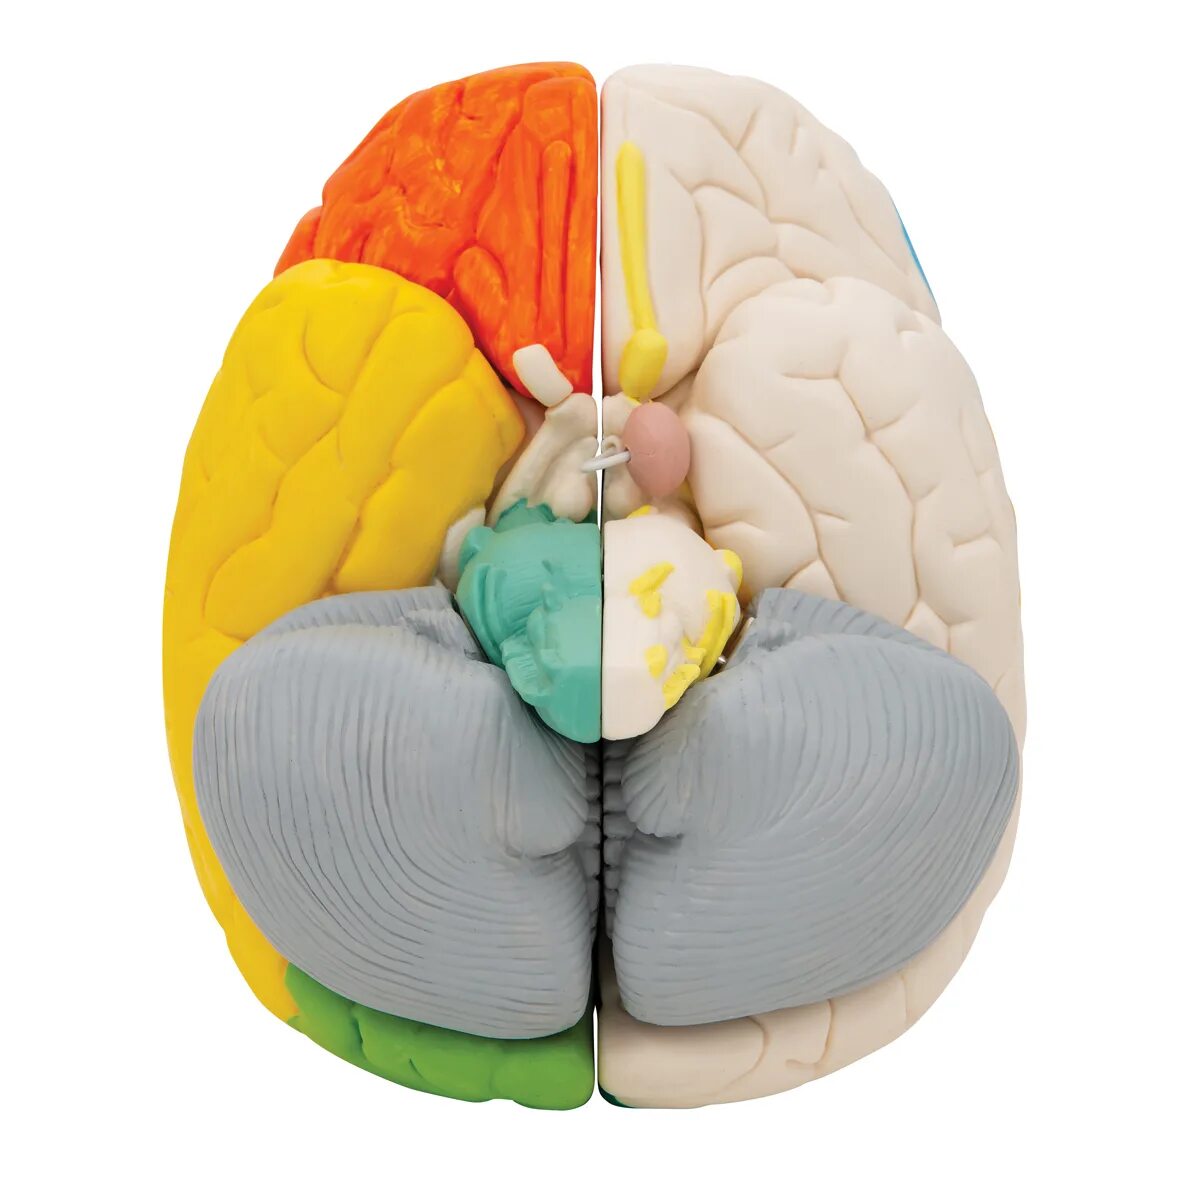 Brain 106. Нейро анатомическая модель мозга. Разборная модель мозга. Ручная модель мозга. Пластиковая модель мозга.